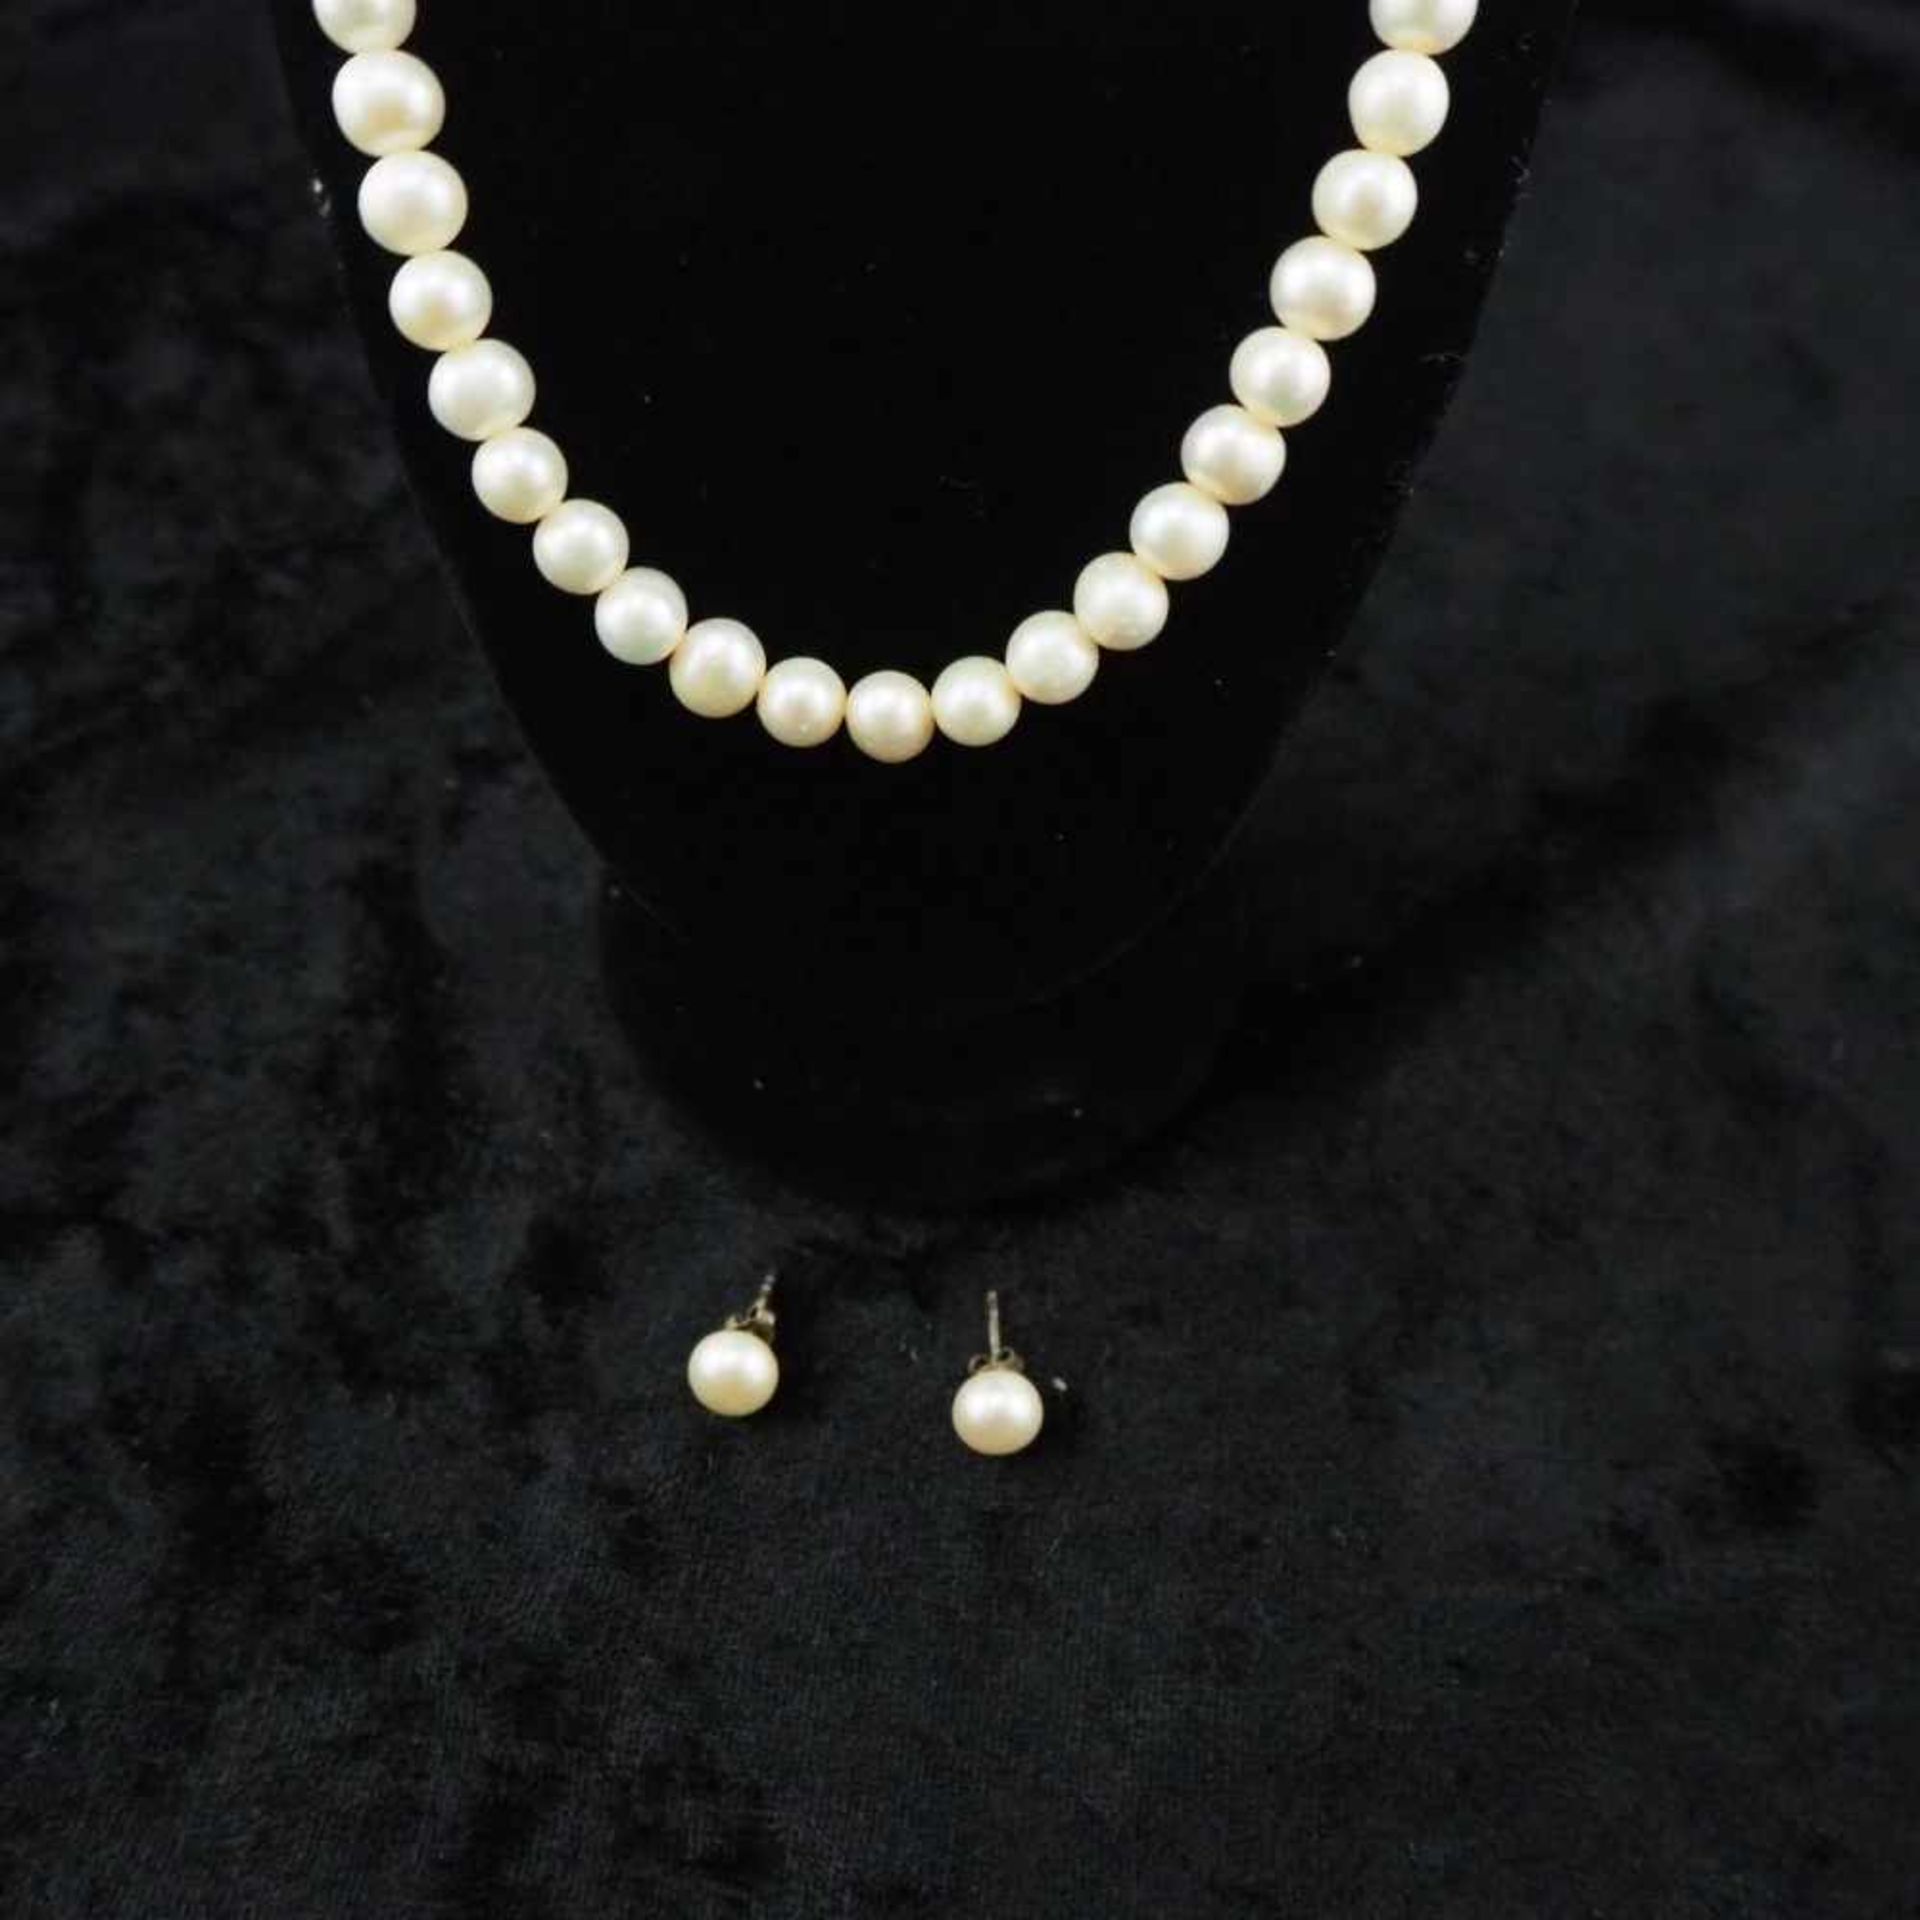 Set Perlenkette mit Ohrringen32,3g Gesamtgewicht, 43cm Gesamtlänge, guter GebrauchtzustandSet of - Bild 2 aus 2